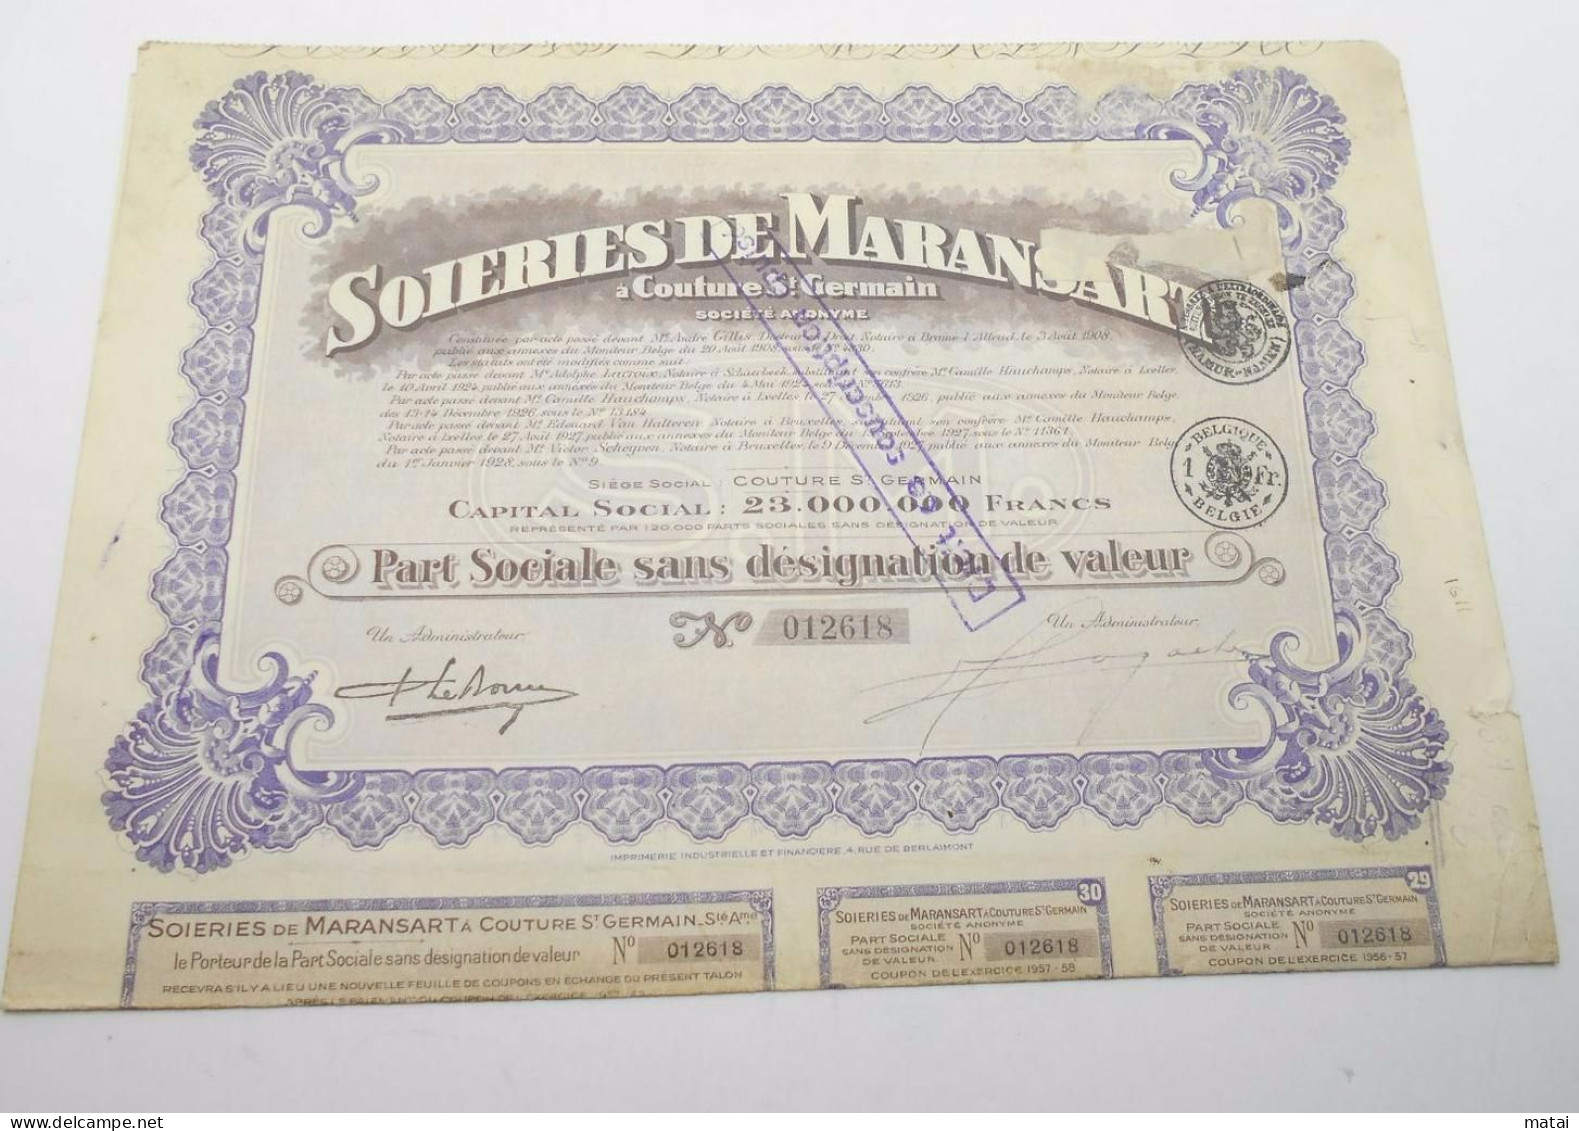 Part Sociale " Soieries De Maransart " Couture St Germain 1928 Soie Textile ,avec Tous Les Coupons N° 012618 - Textiel